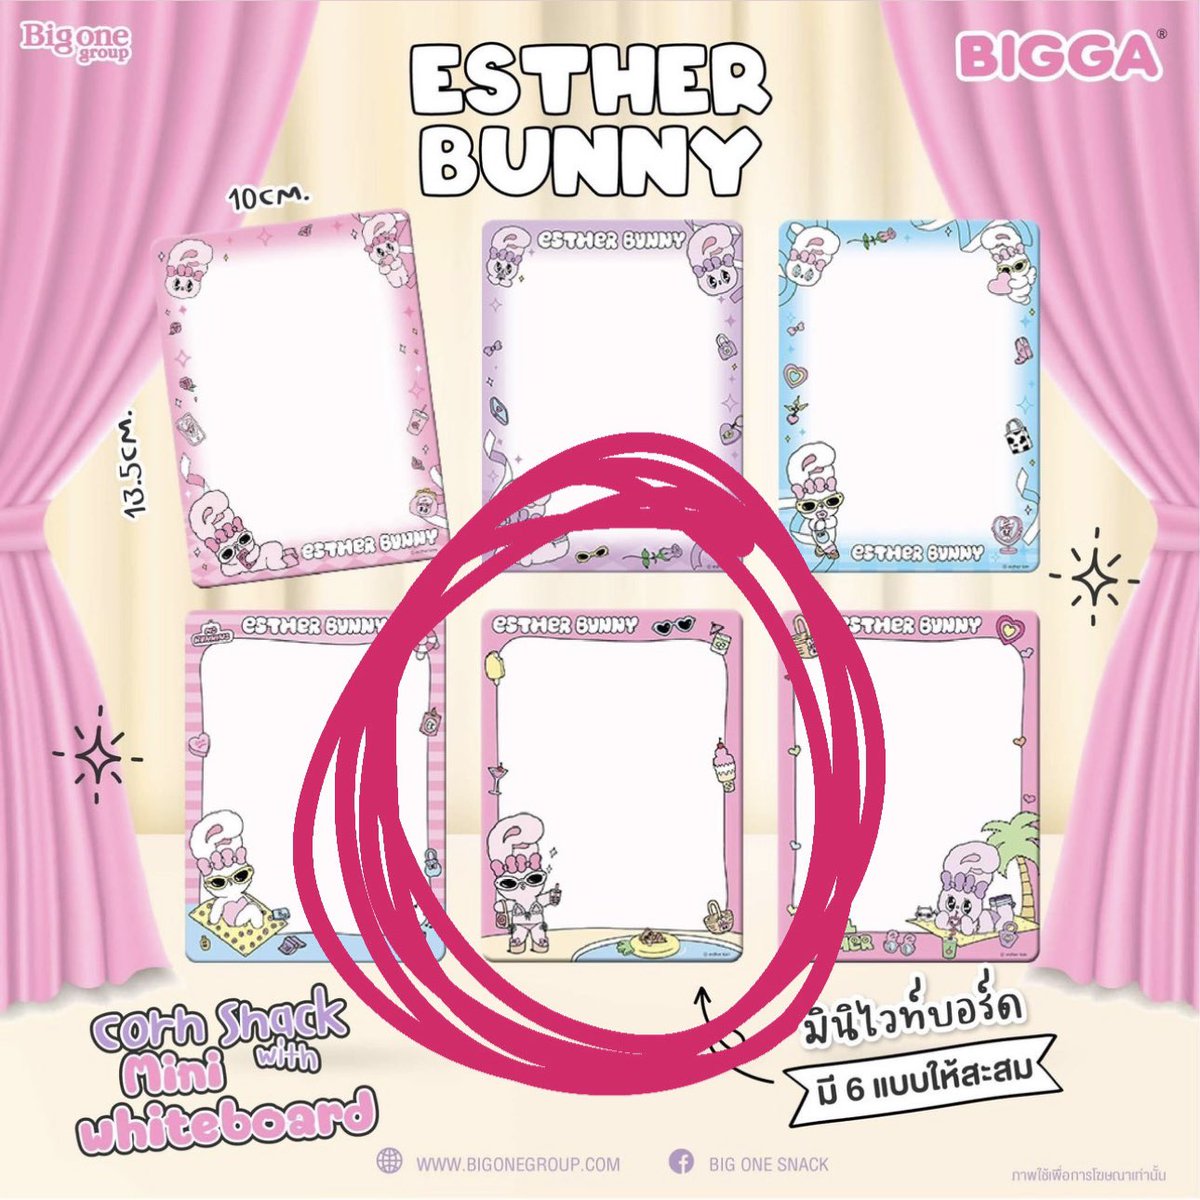 ตามหากระจกกับมินิไวท์บอร์ด esther bunny ใครซ้ำส่งต่อให้ทีหรือจะแลกกันก็ได้🥹

#estherbunny #เอสเธอร์บันนี่ #ตลาดนัดเอสเธอร์บันนี่ #รีวิวเซเว่น